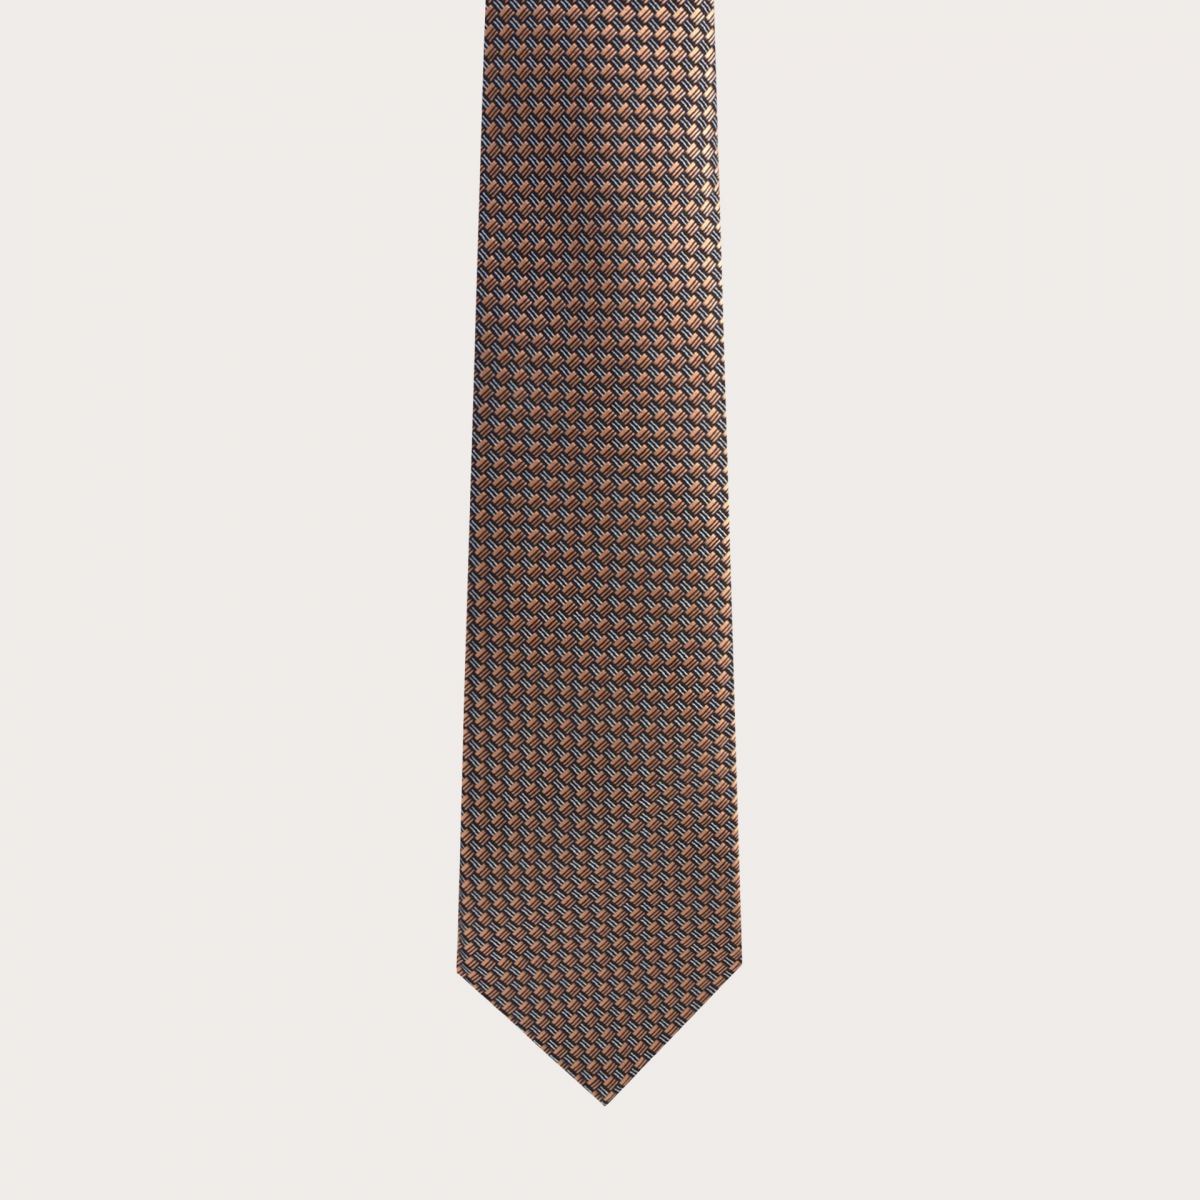 BRUCLE Elegante cravatta in seta jacquard, fantasia bronzo